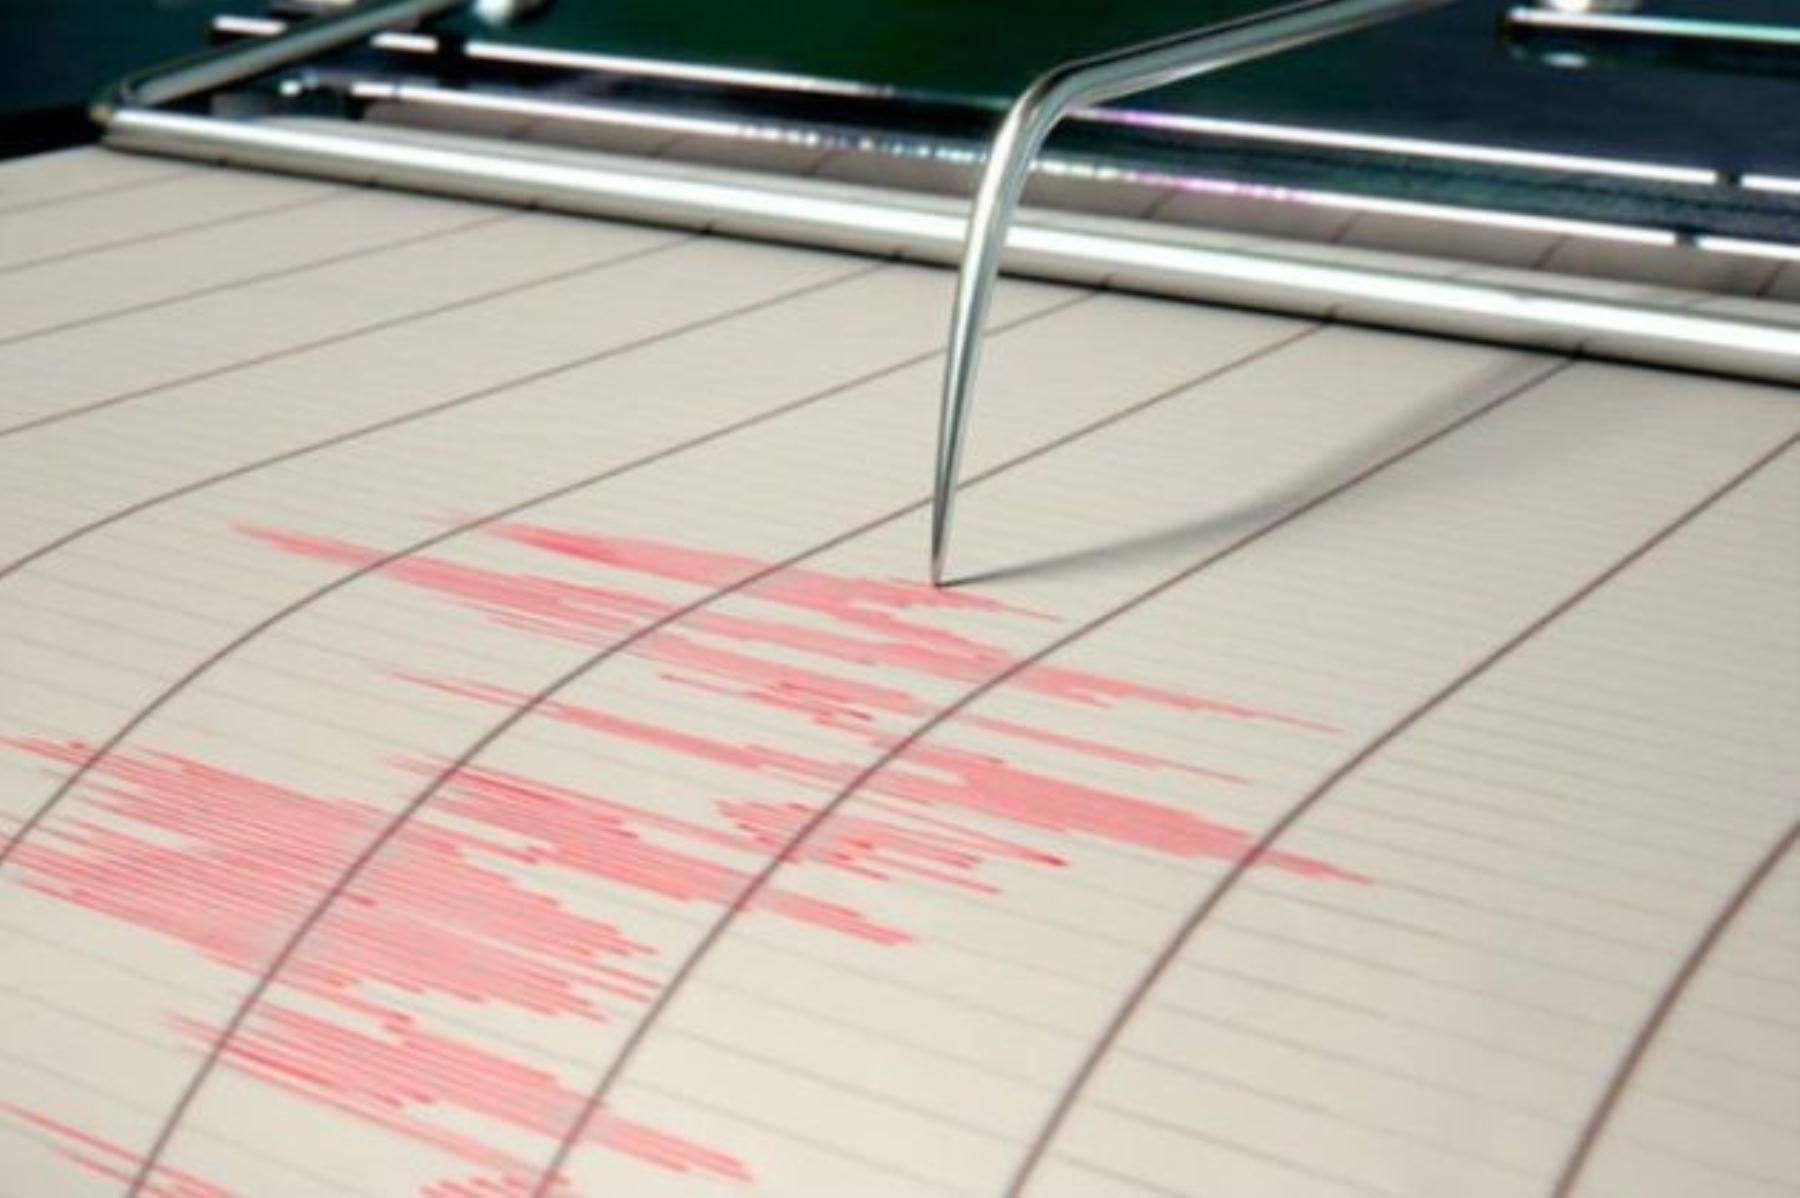 Esta tarde se registró un sismo de magnitud 3.7 en el distrito de Uchiza, región San Martín. Foto: Twitter